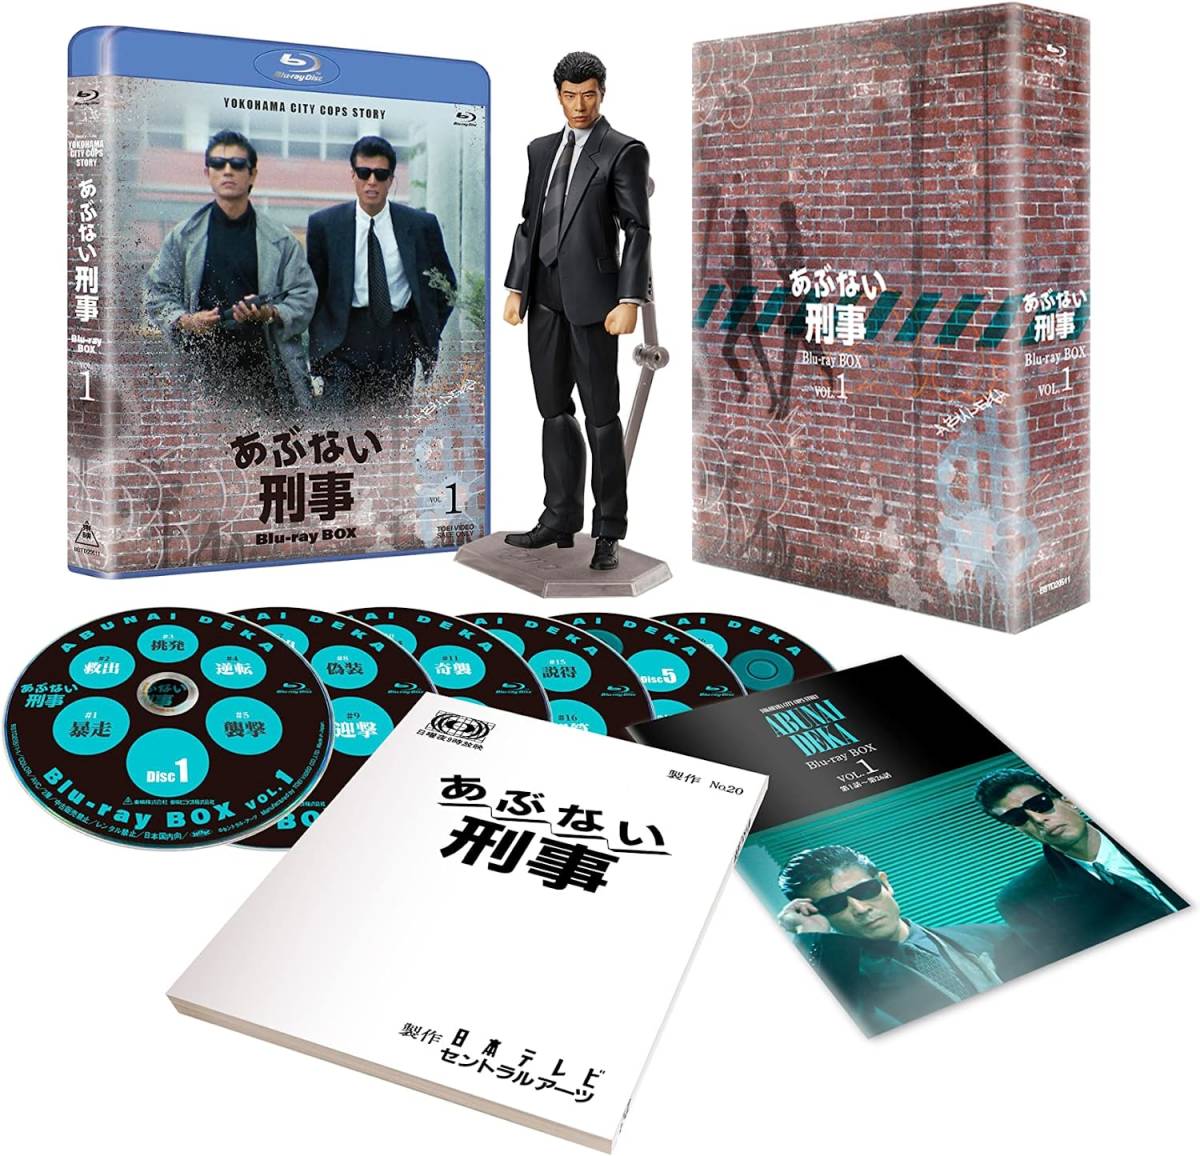 フィギュア付き 完全予約限定生産 あぶない刑事Blu-ray BOX VOL.1＋ 